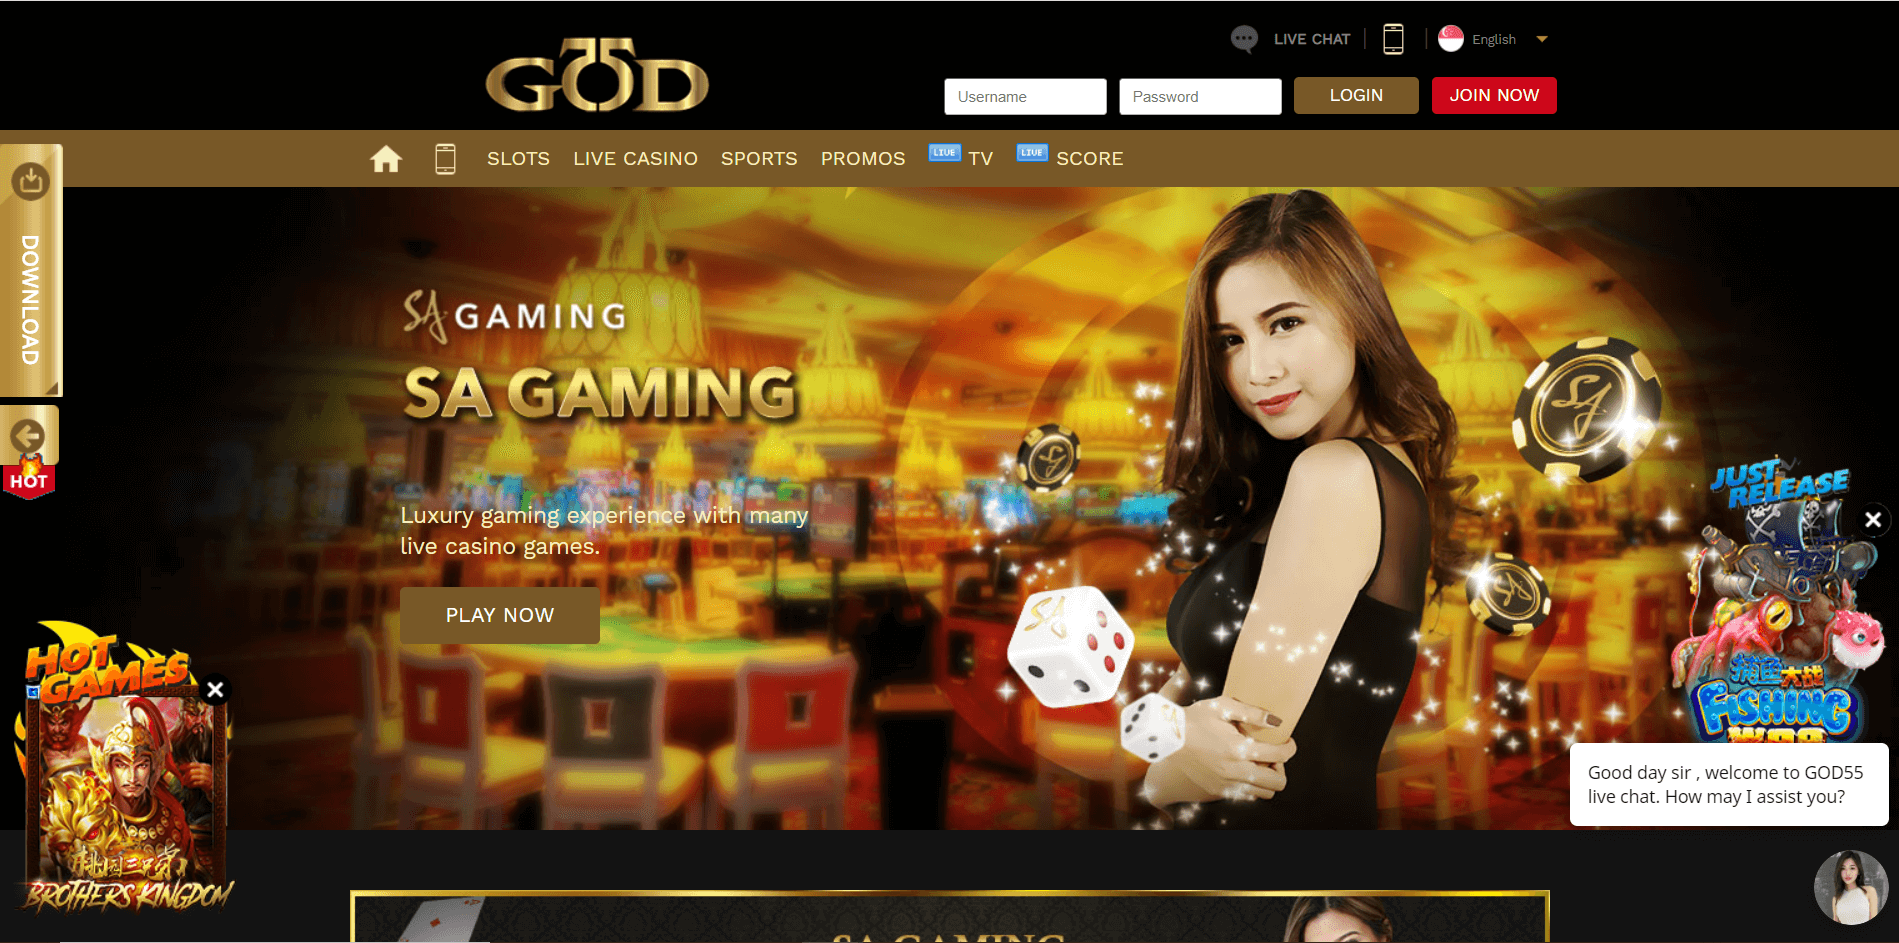 God55 website display